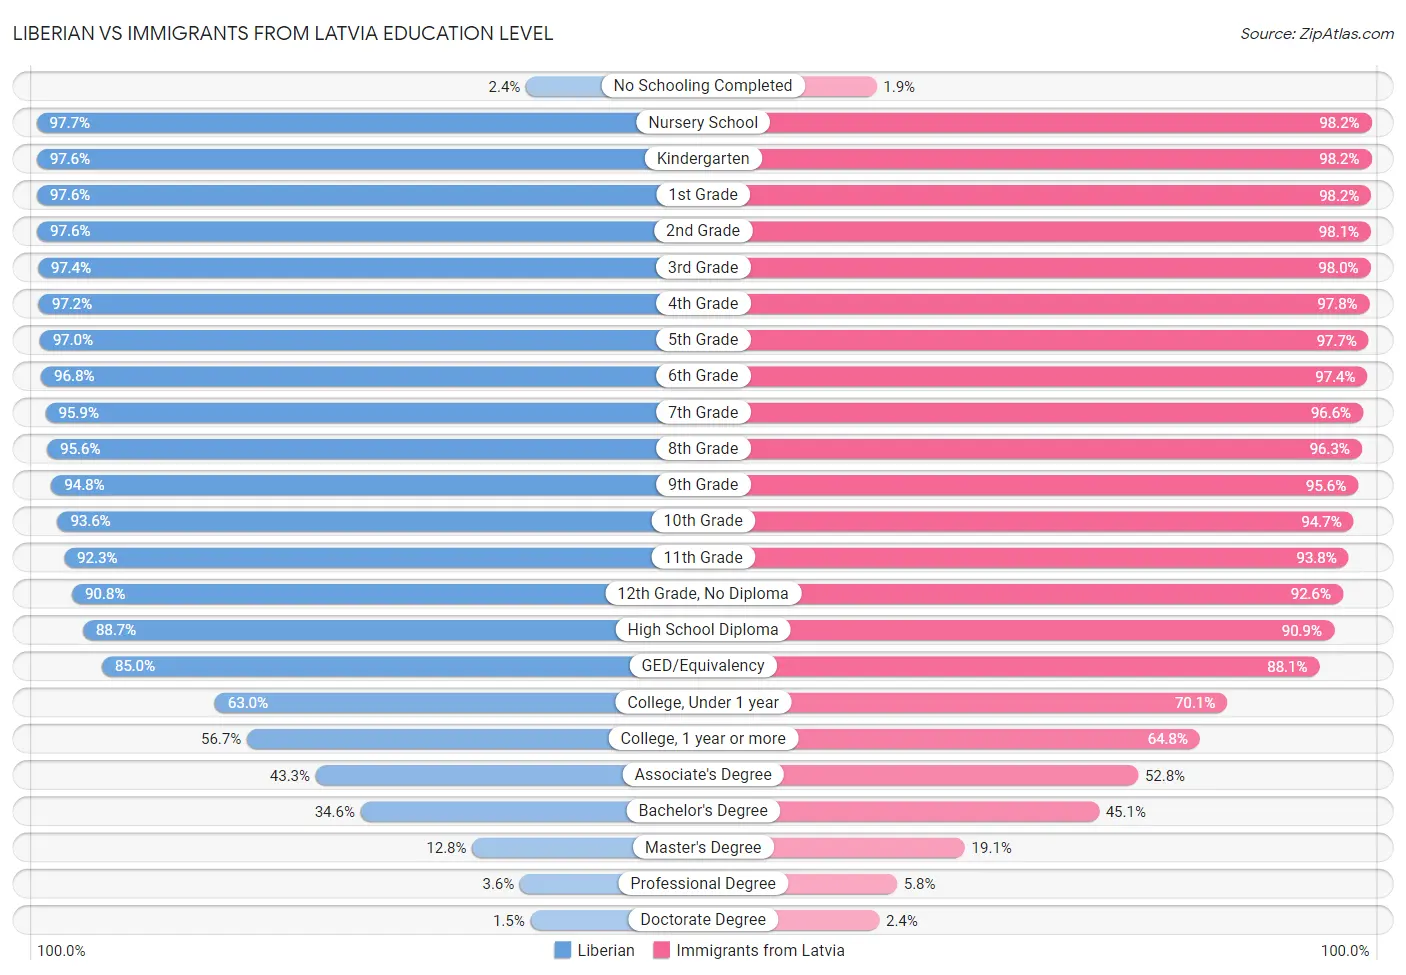 Liberian vs Immigrants from Latvia Education Level